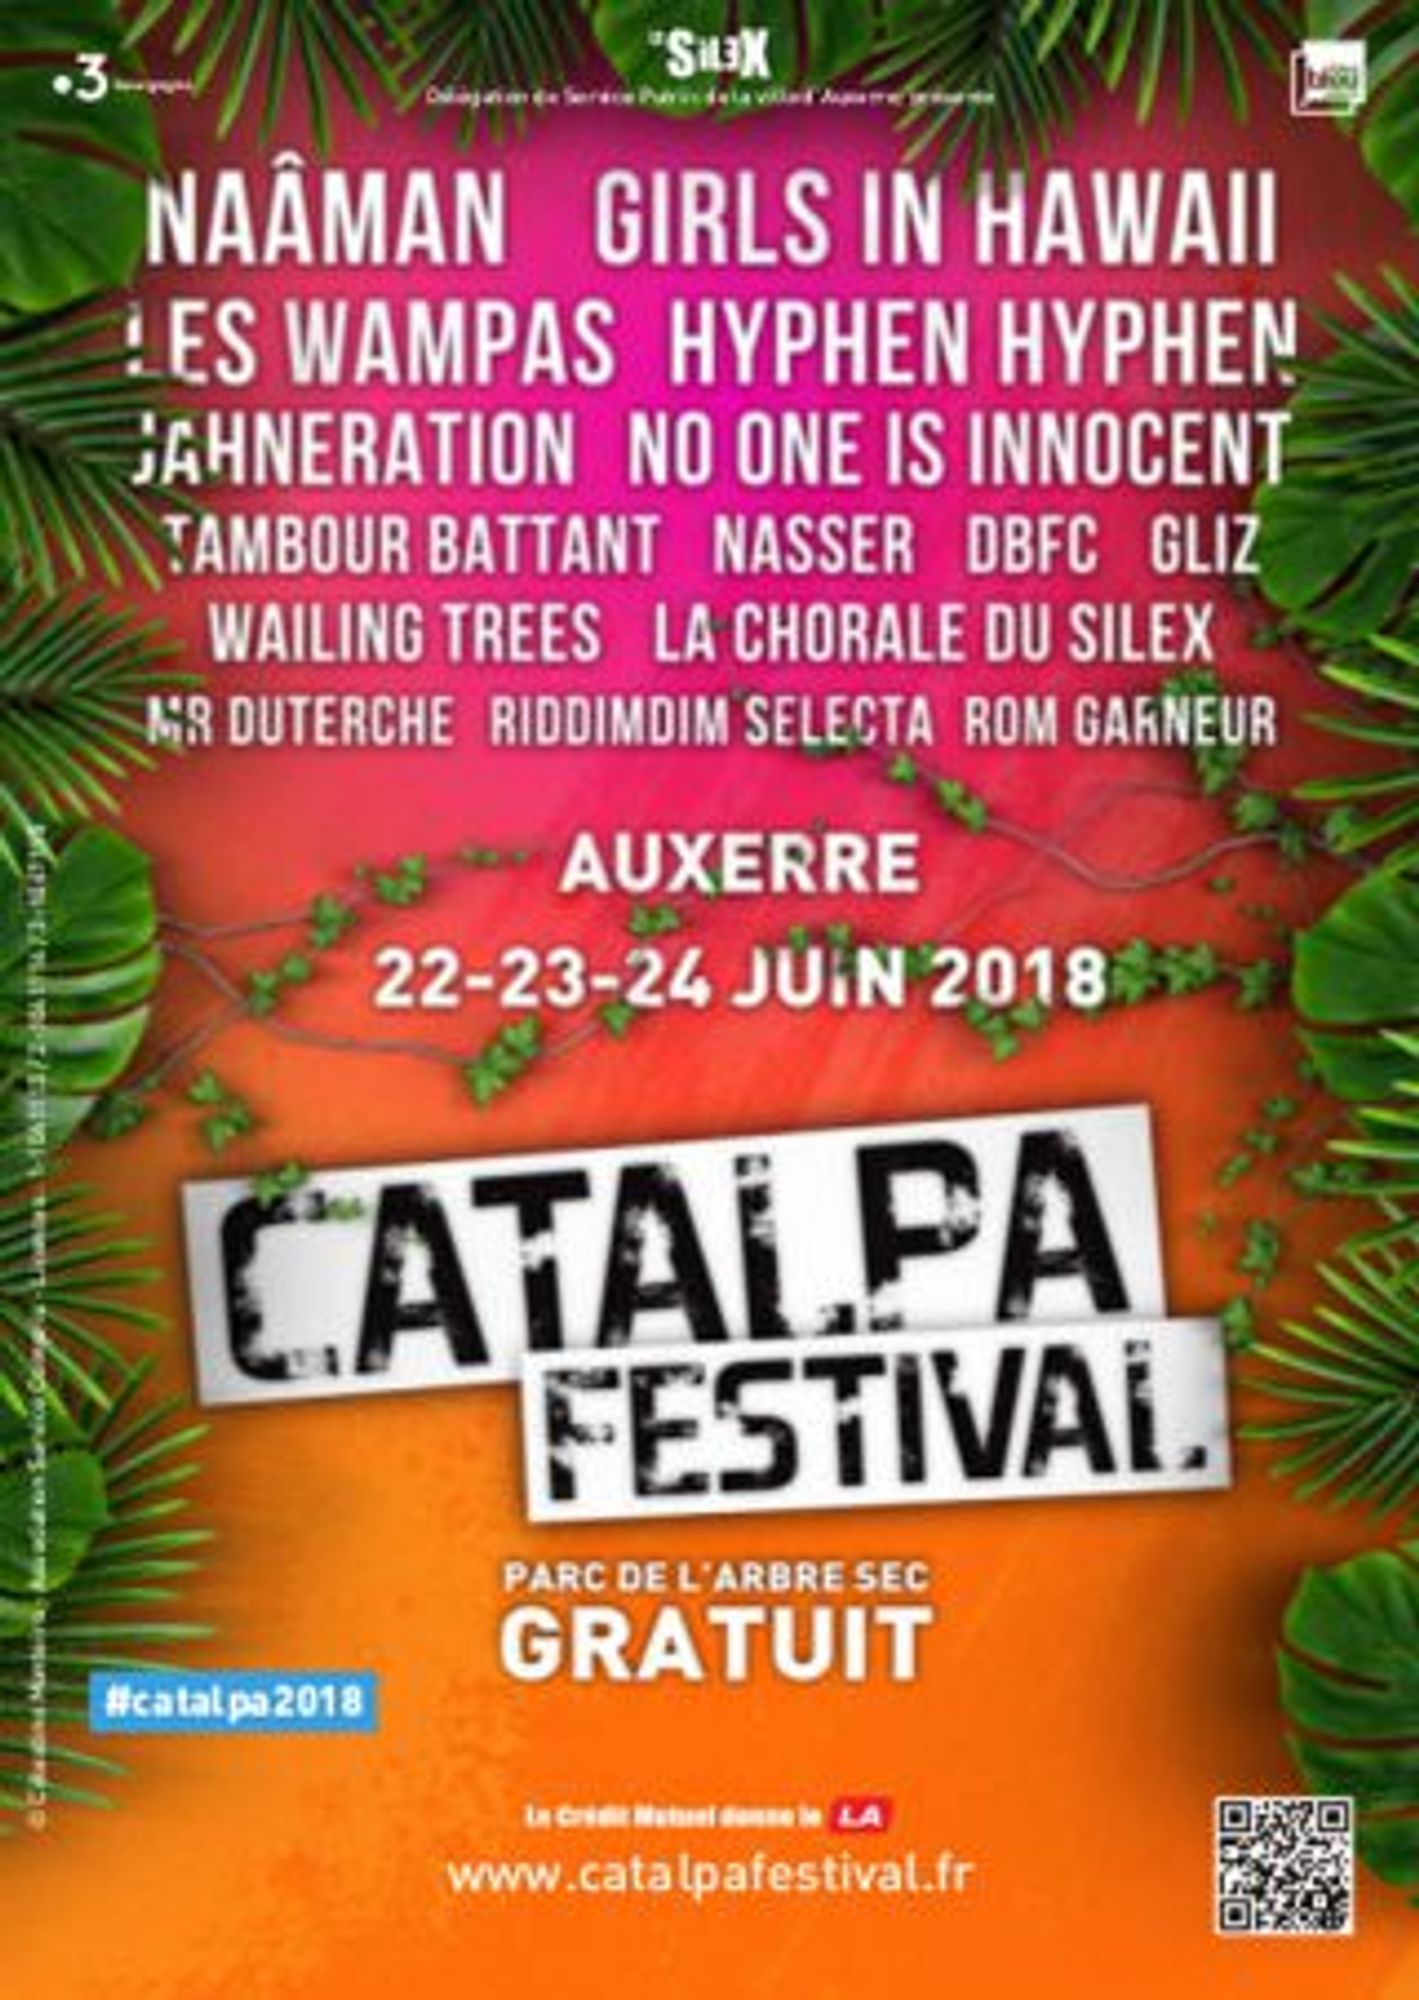 Participez au Catalpa Festival 2018 avec OUI FM